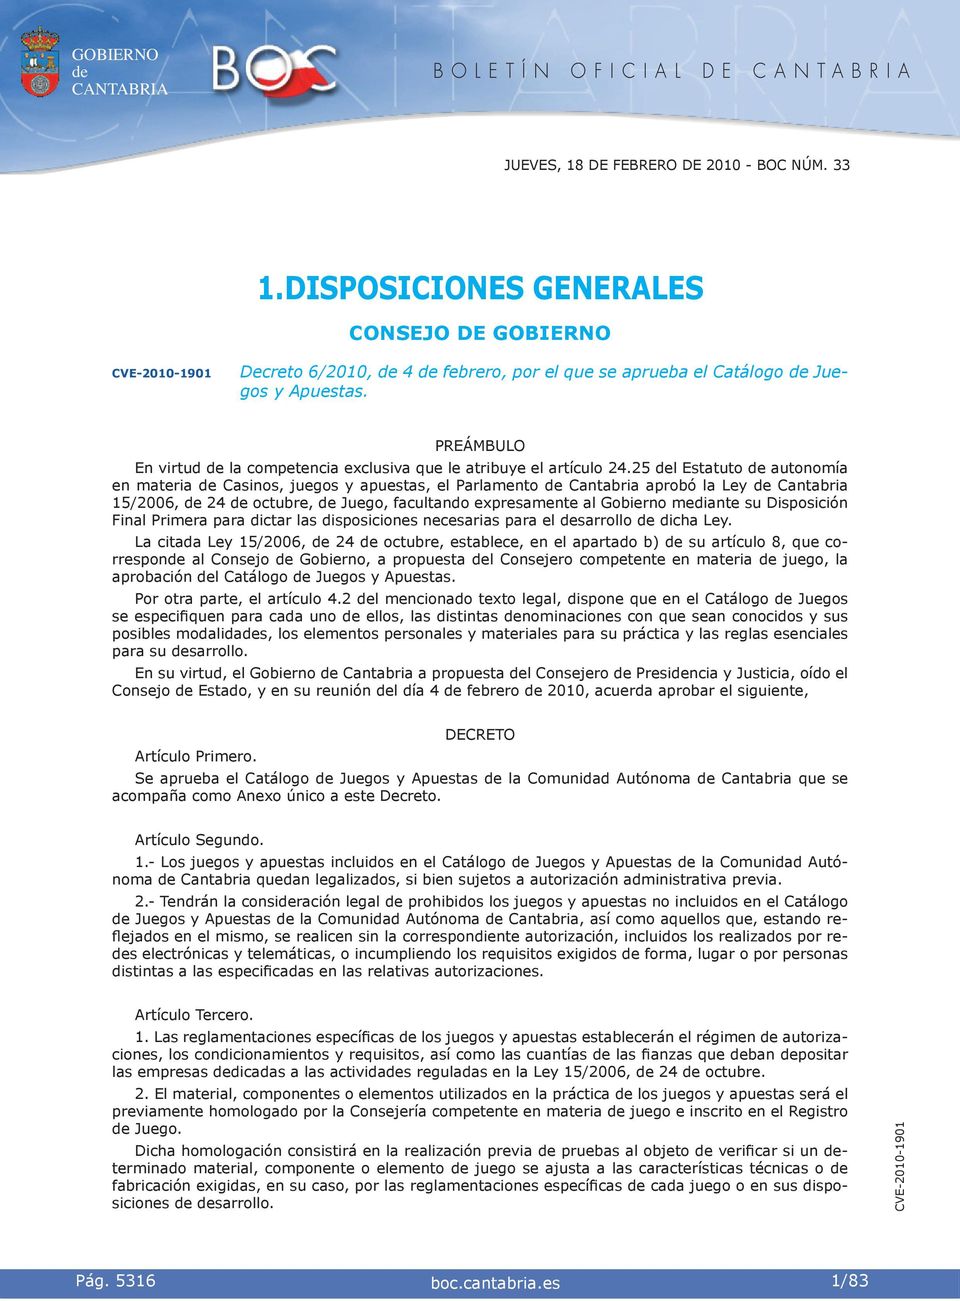 25 l Estatuto autonomía en materia Casinos, juegos y apuestas, el Parlamento Cantabria aprobó la Ley Cantabria 15/2006, 24 octubre, Juego, facultando expresamente al Gobierno mediante su Disposición